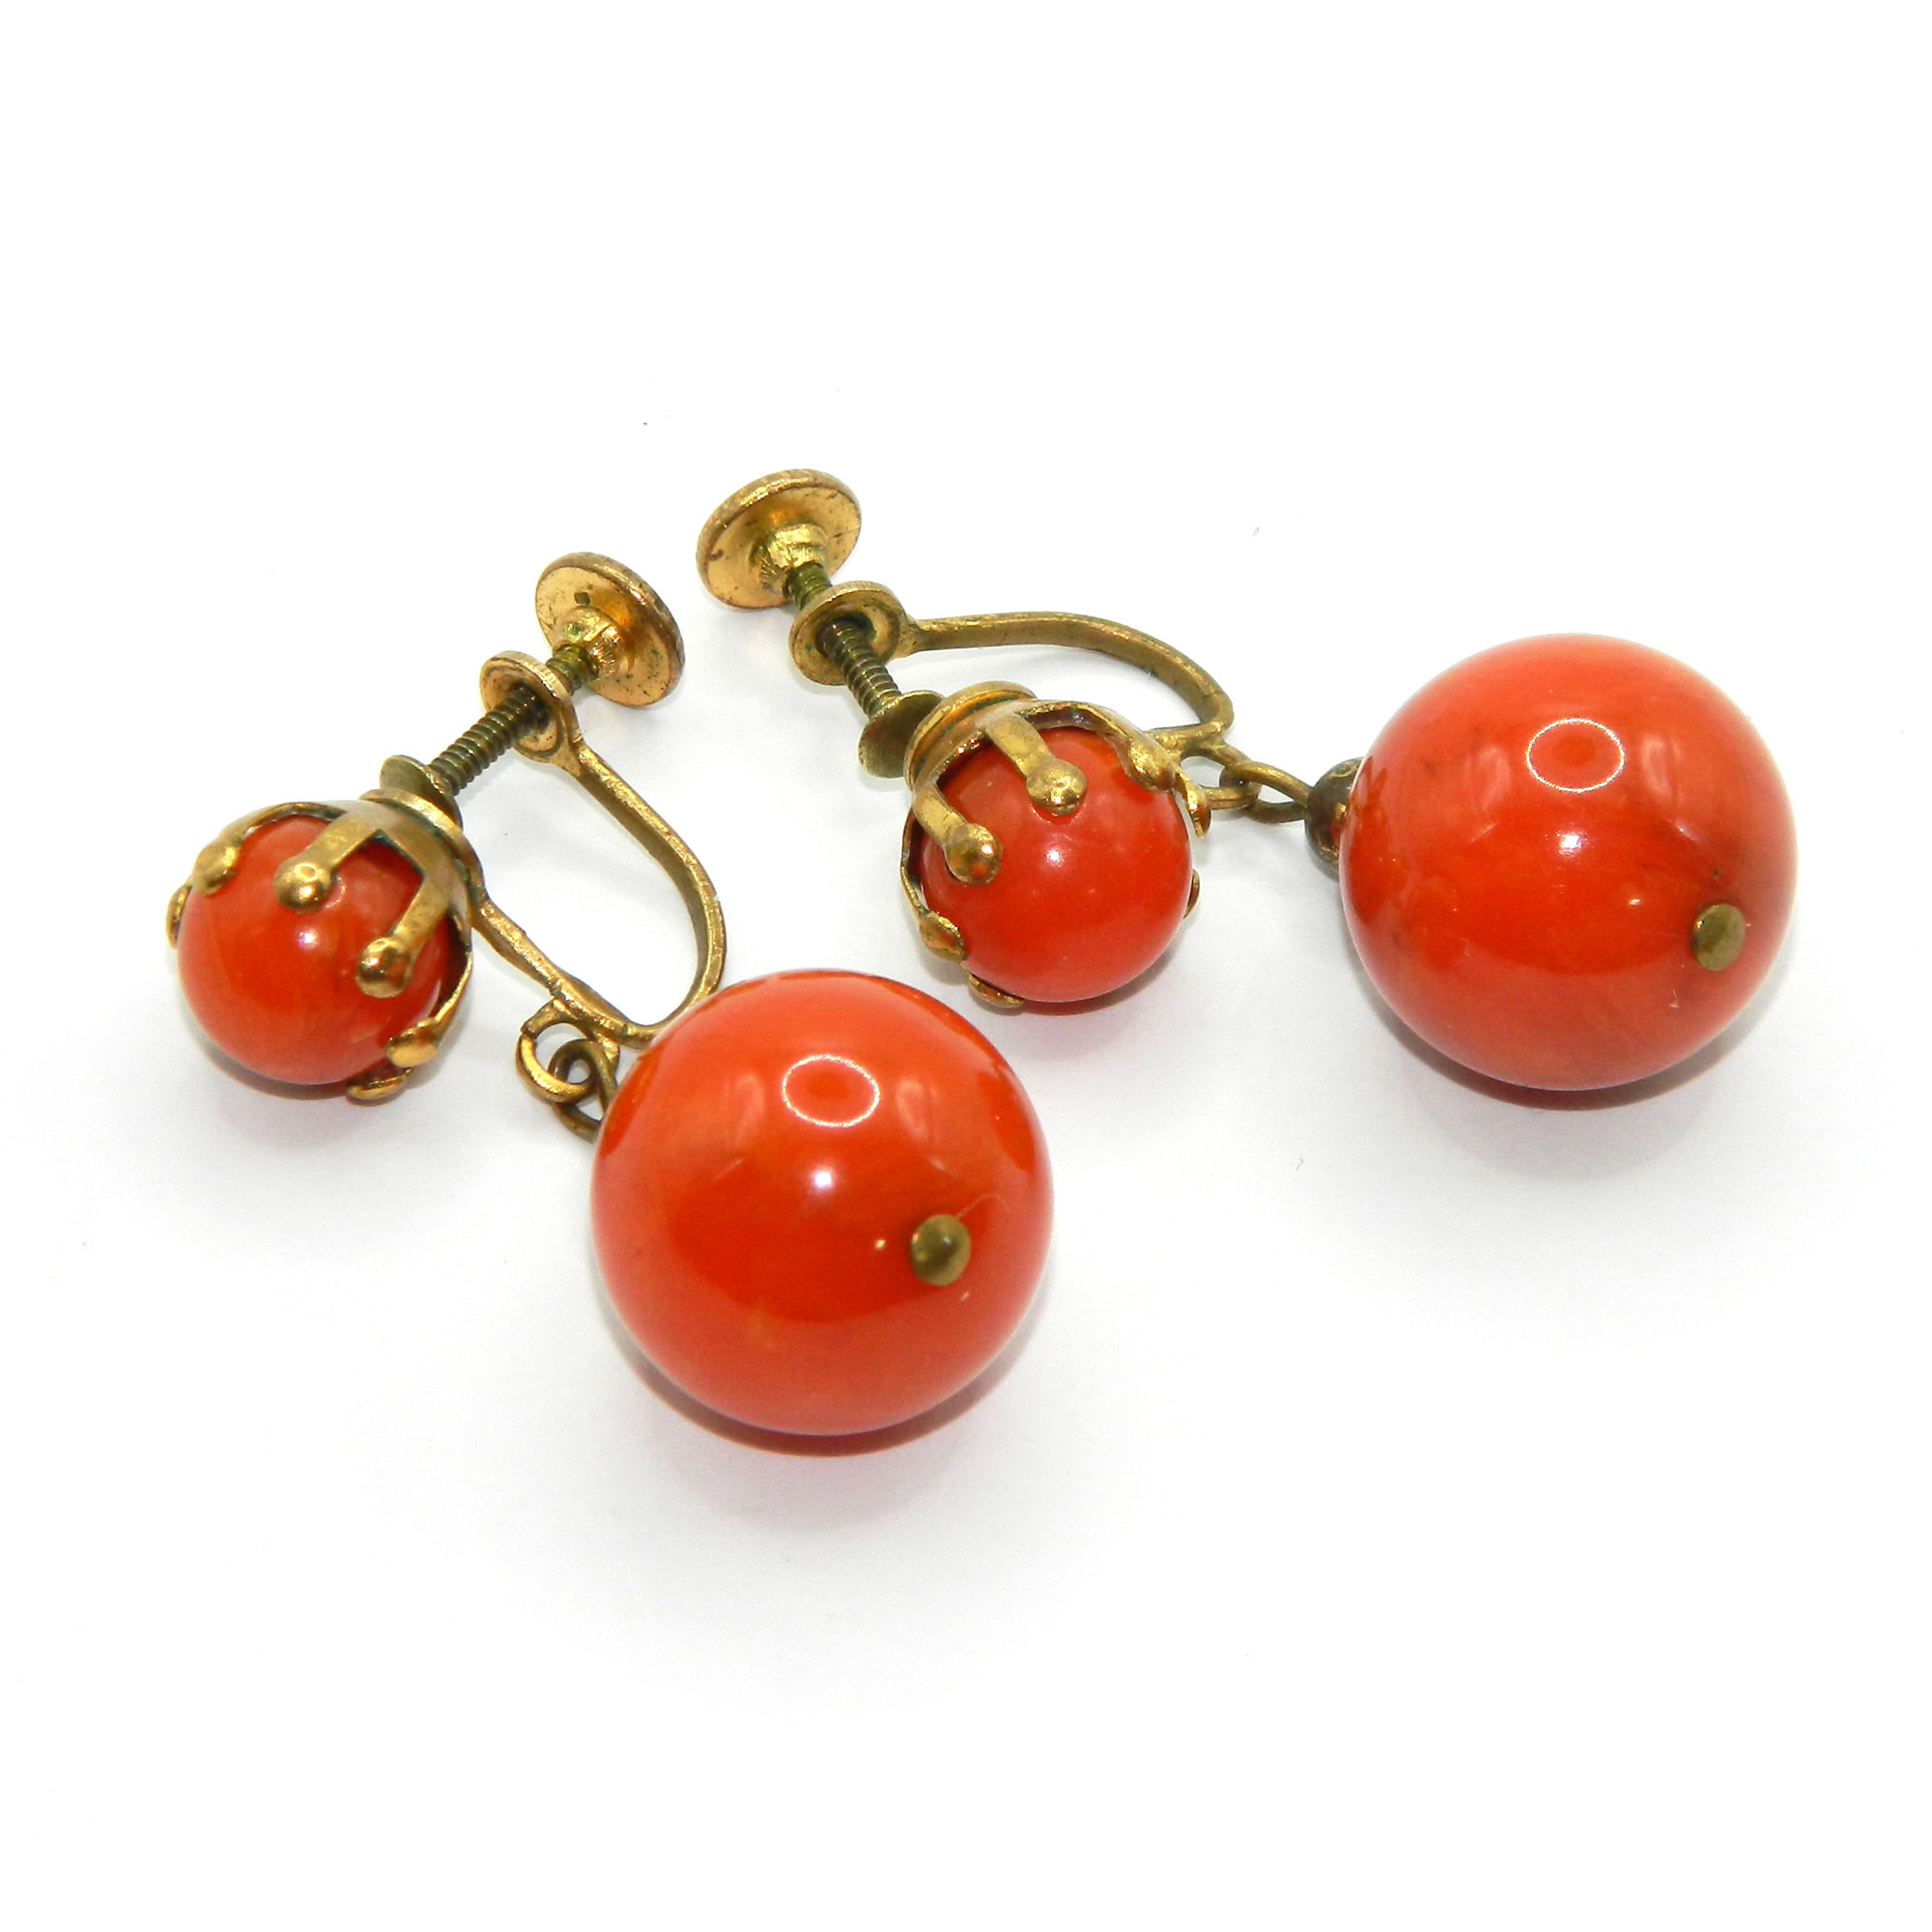 Orange bakelite drop earrings